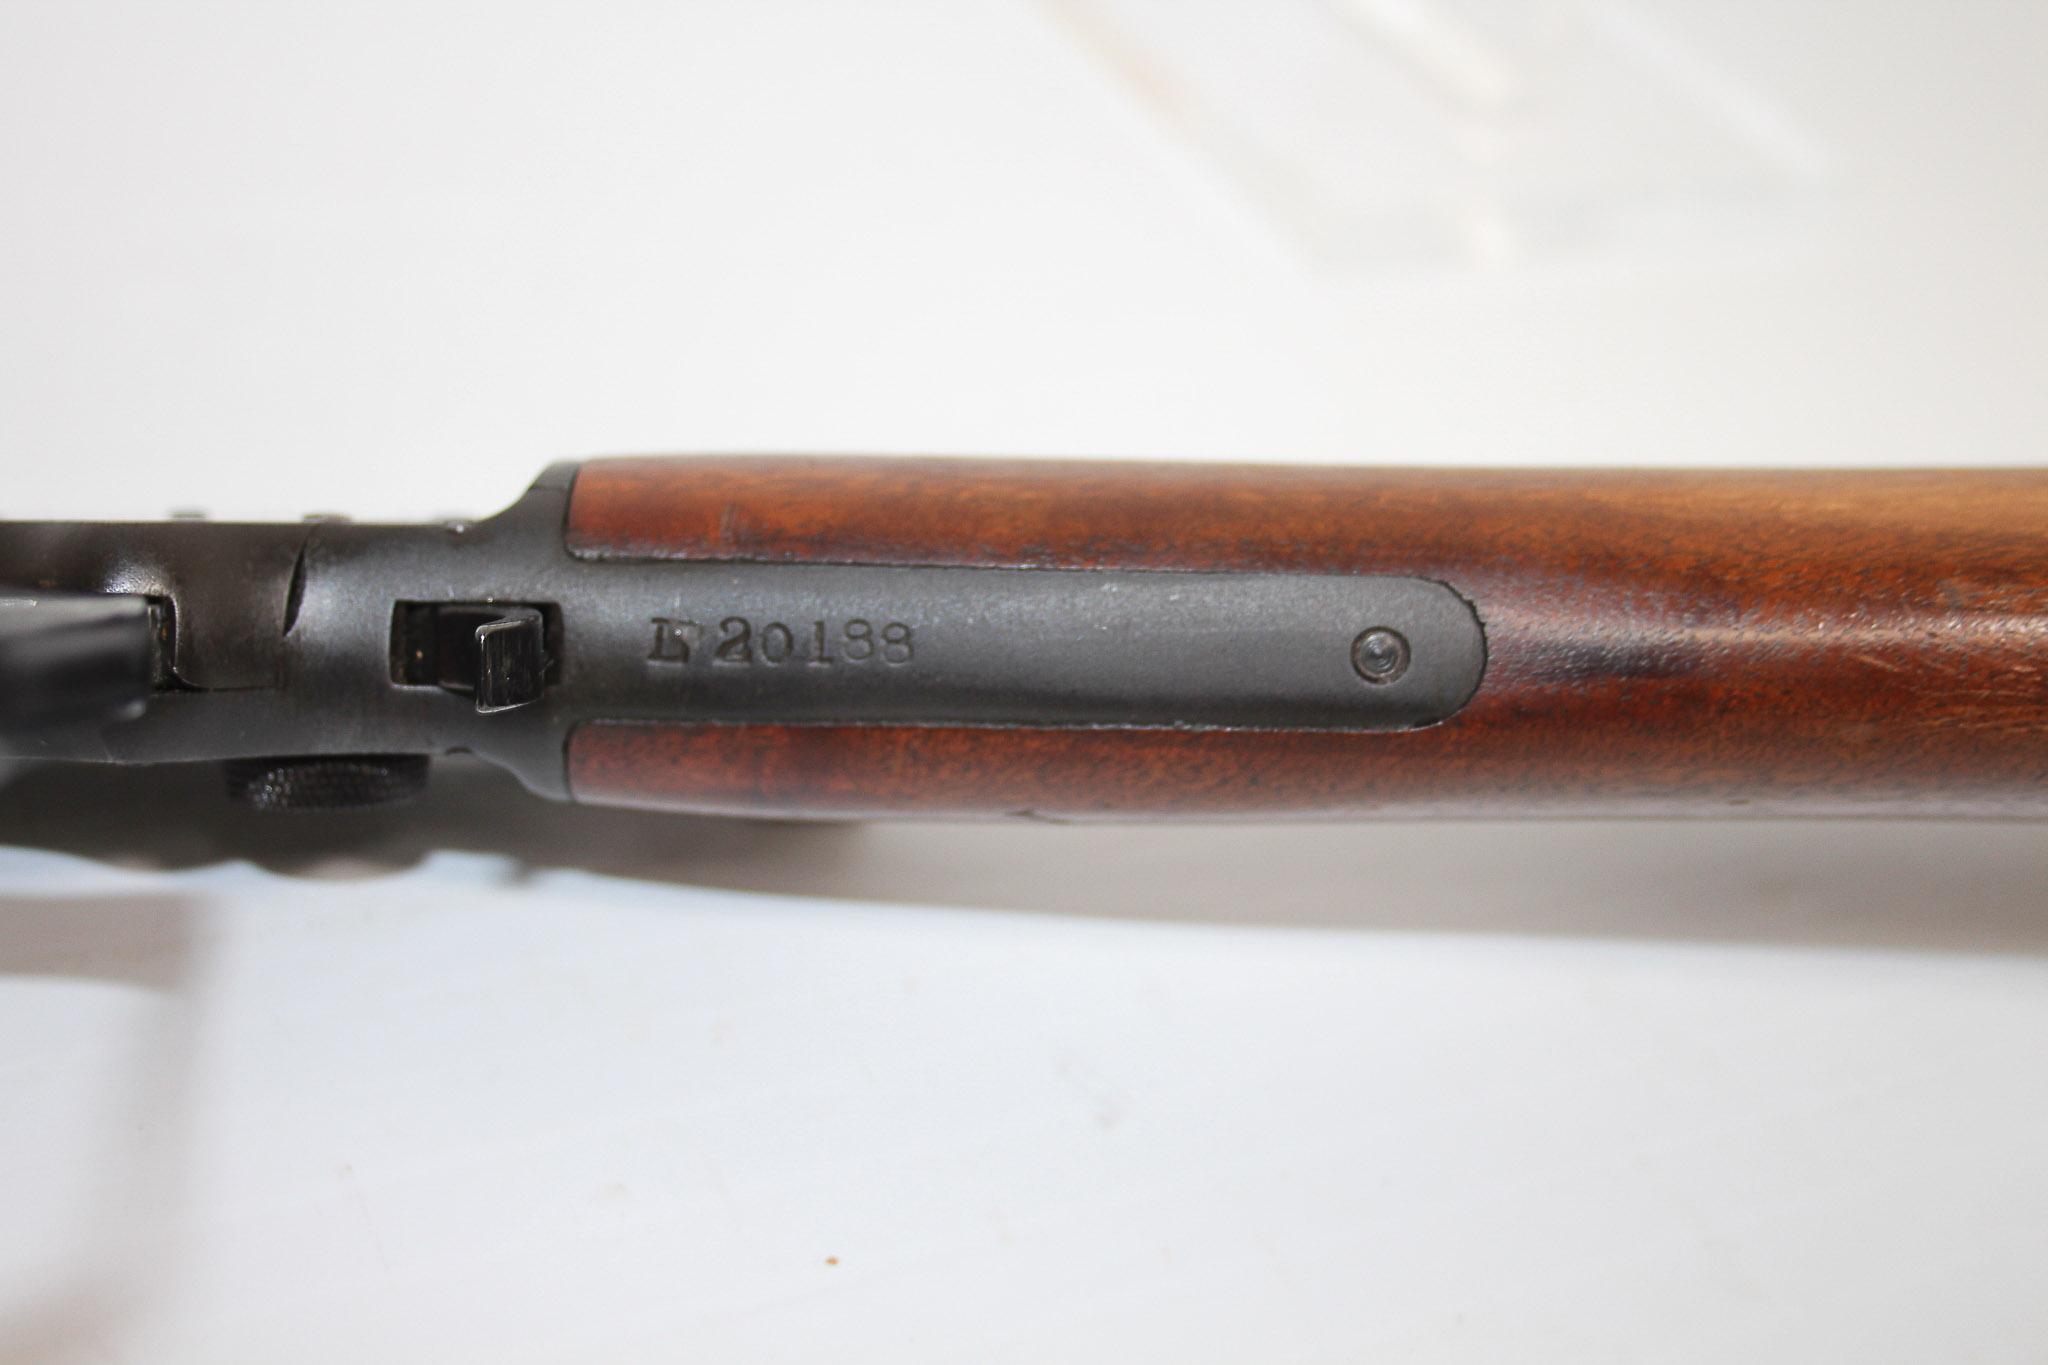 Marlin 39A, 22S,L,LR, Rifle